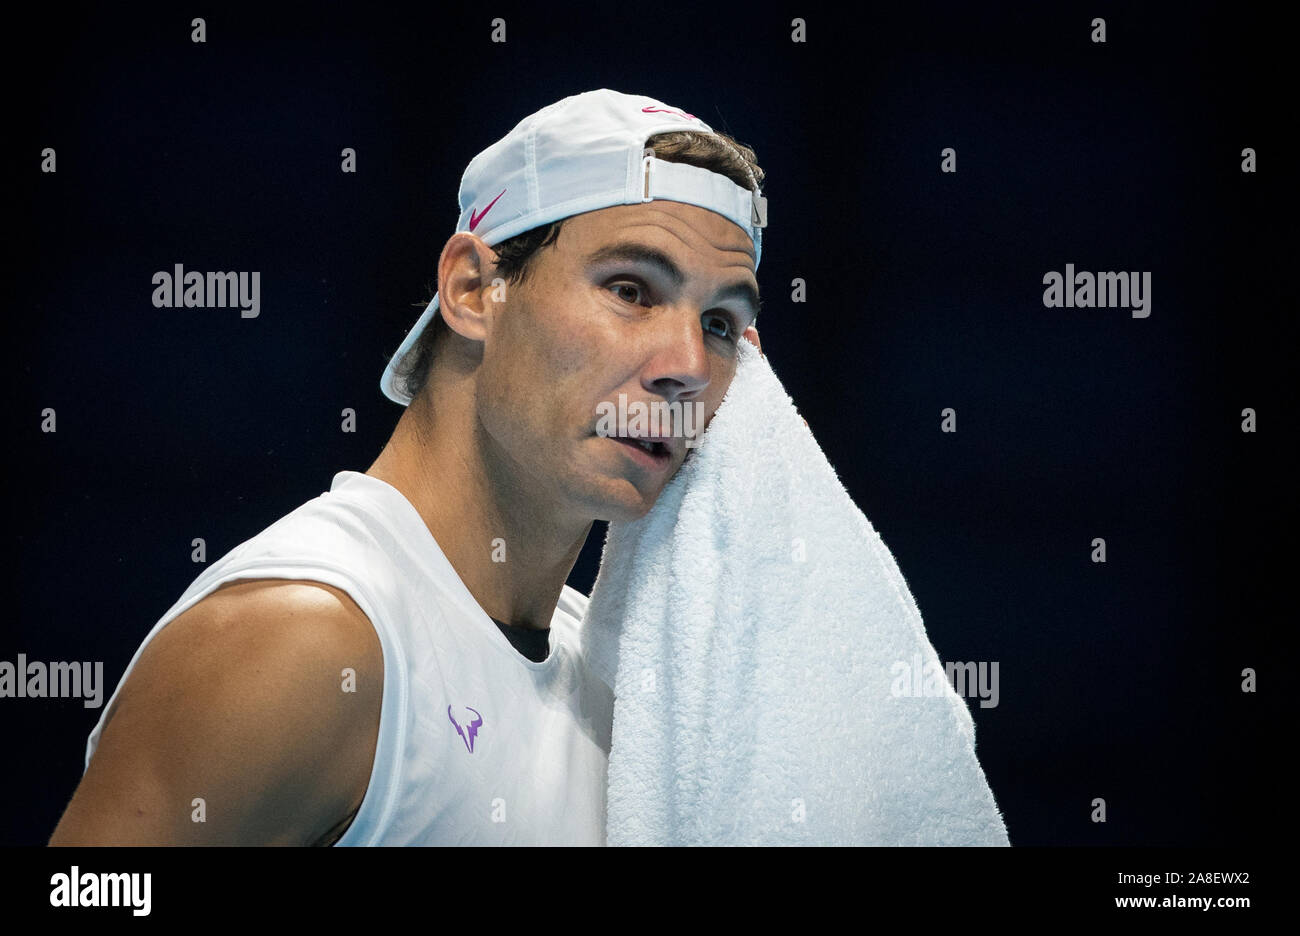 Londra, Regno Unito. 08 Nov, 2019. Rafa Nadal di Spagna durante la pratica presso la Nitto ATP Finals Tennis Londra media day all'O2, Londra, Inghilterra il 8 novembre 2019. Foto di Andy Rowland. Credito: prime immagini multimediali/Alamy Live News Foto Stock